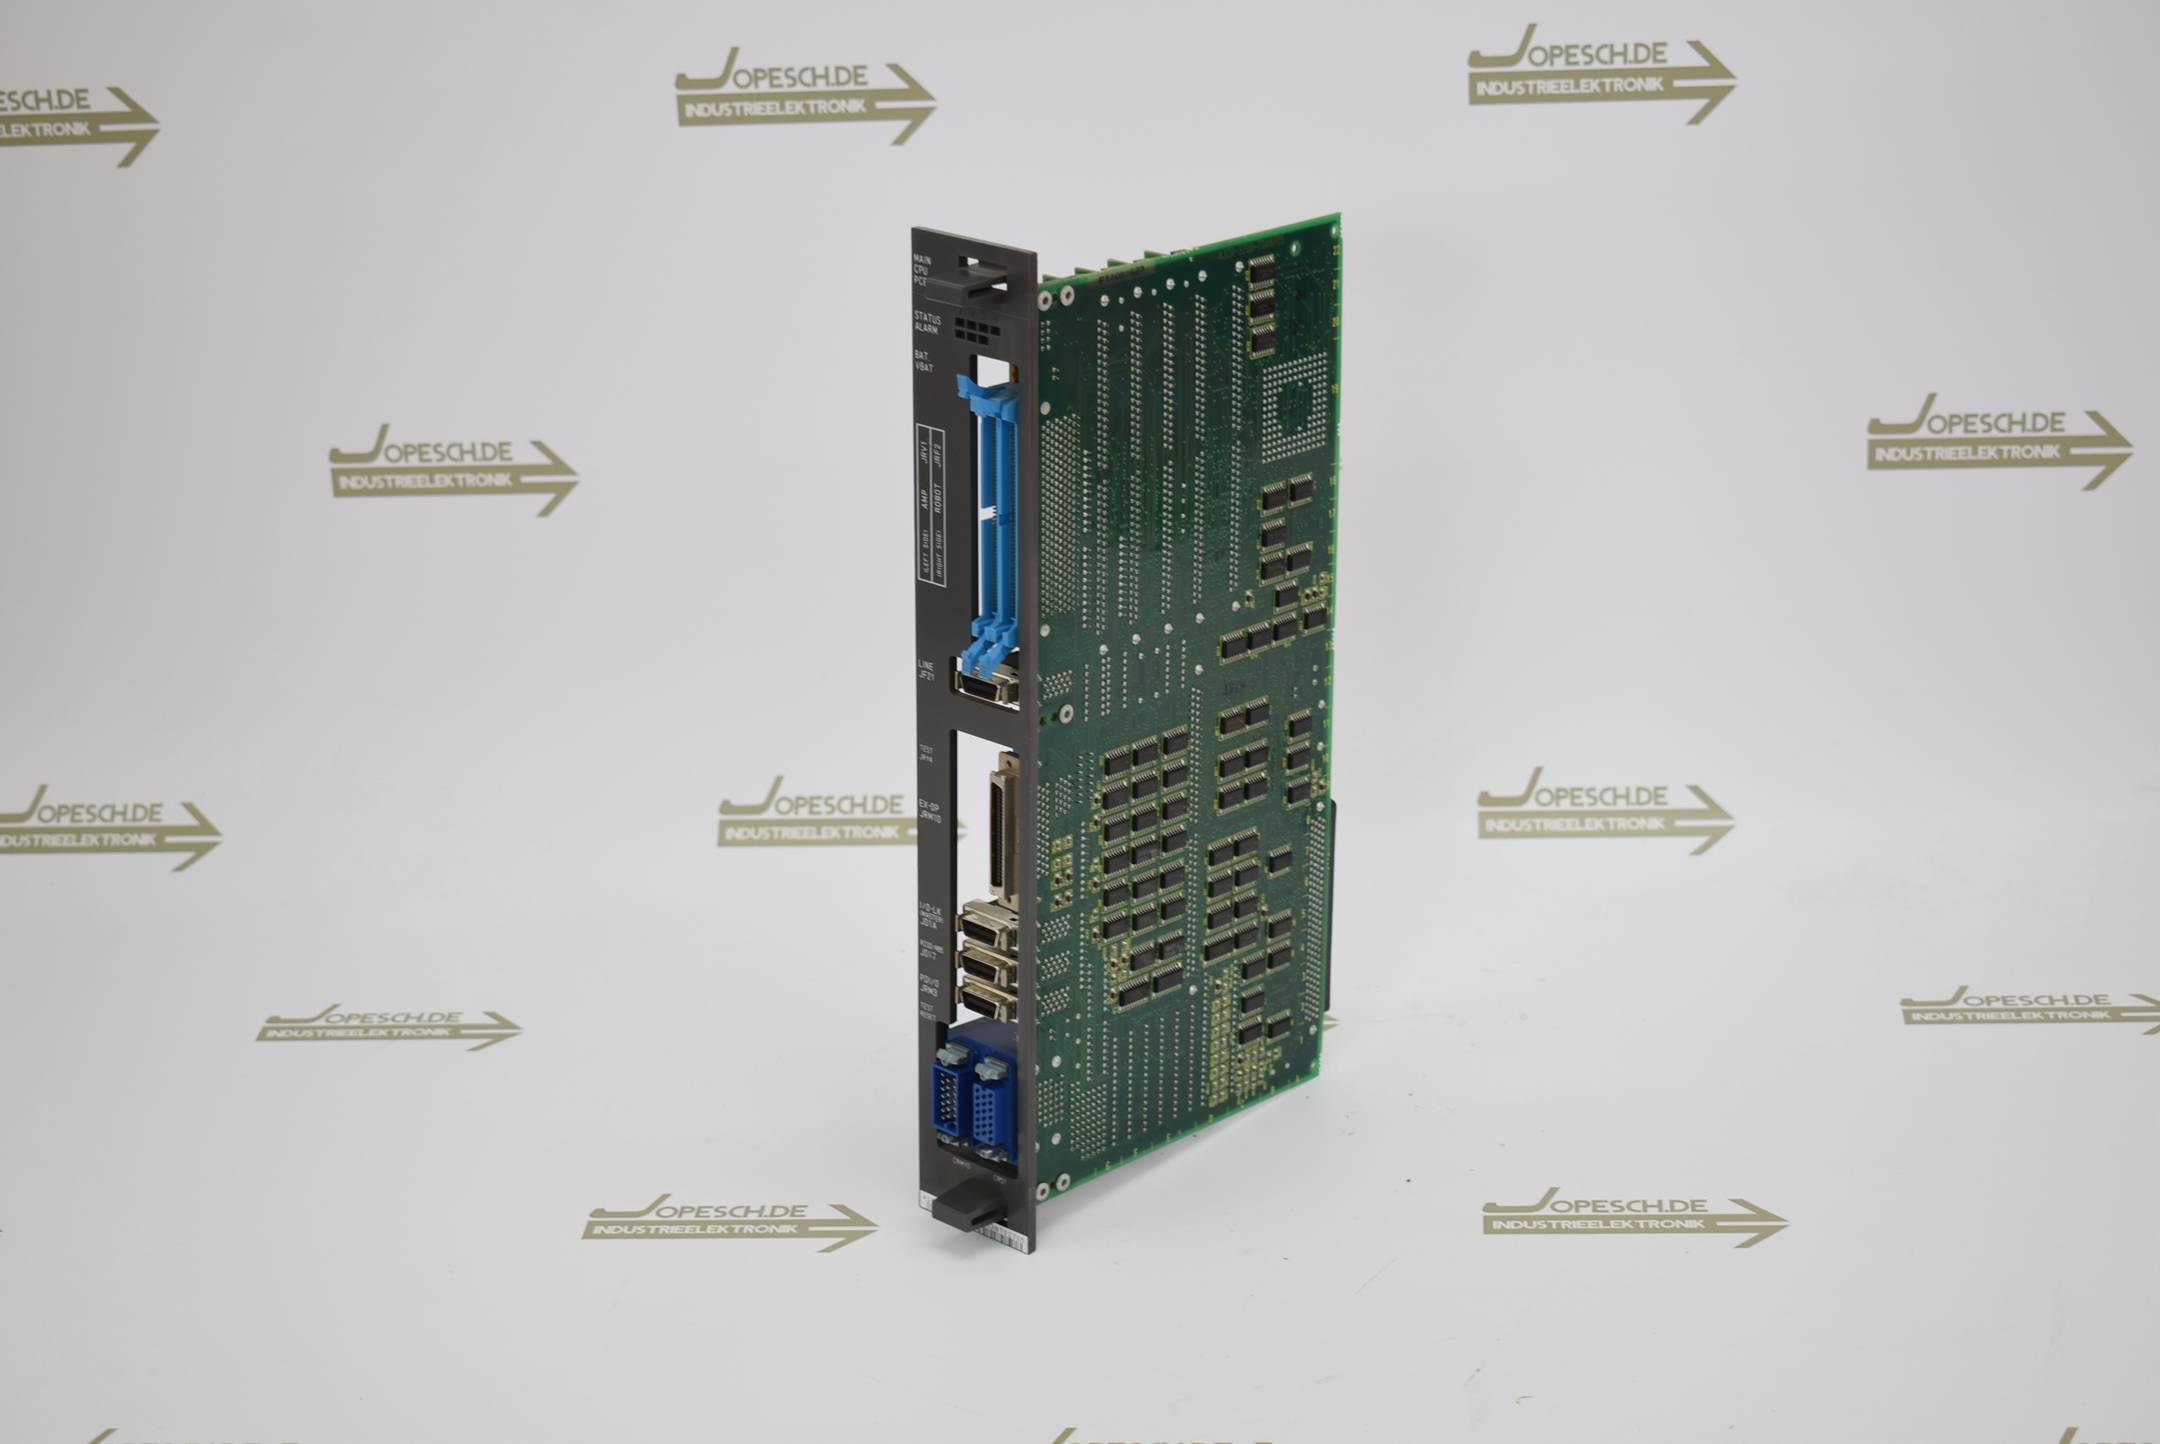 Fanuc Main CPU PCB Karte A16B-3200-0042-03B